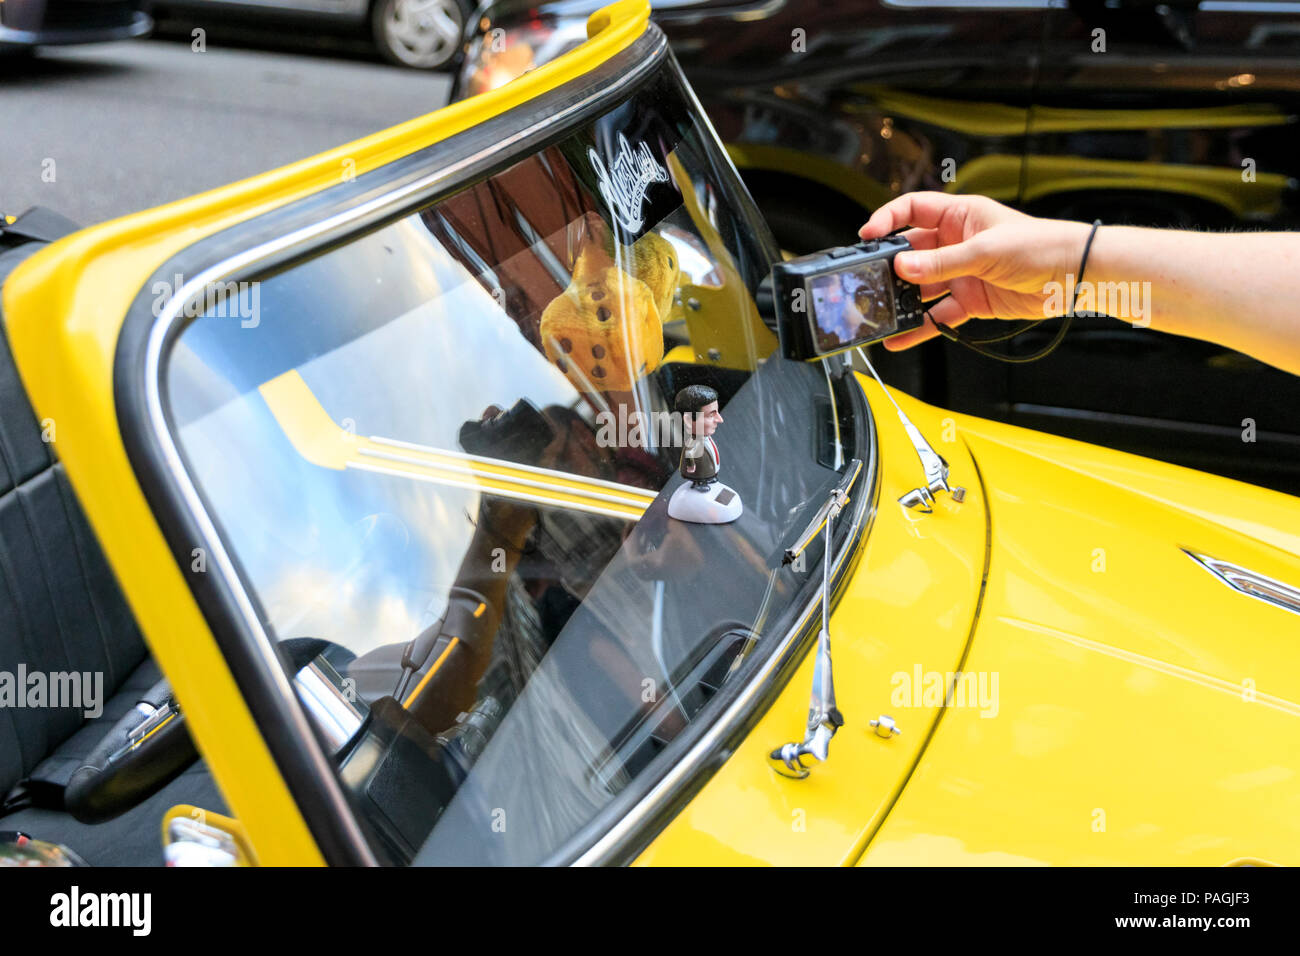 Sloane Street, Londres, Royaume-Uni, le 20 juillet 2018. Un "cut-down' Mini en jaune vif, avec un sourire et propriétaire M. Bean sur la planche de bord, vole la vedette et est clairement populaire. Supercars, haute performance et des voitures classiques, ainsi que quelques adaptations de caractère, s'alignent et conduire le long de Sloane Street pour Supercar Dimanche, qui voit autour de 400 voitures présentes. La rencontre meetup est organisé par Surrey Location rencontrez et sur les médias sociaux. Banque D'Images